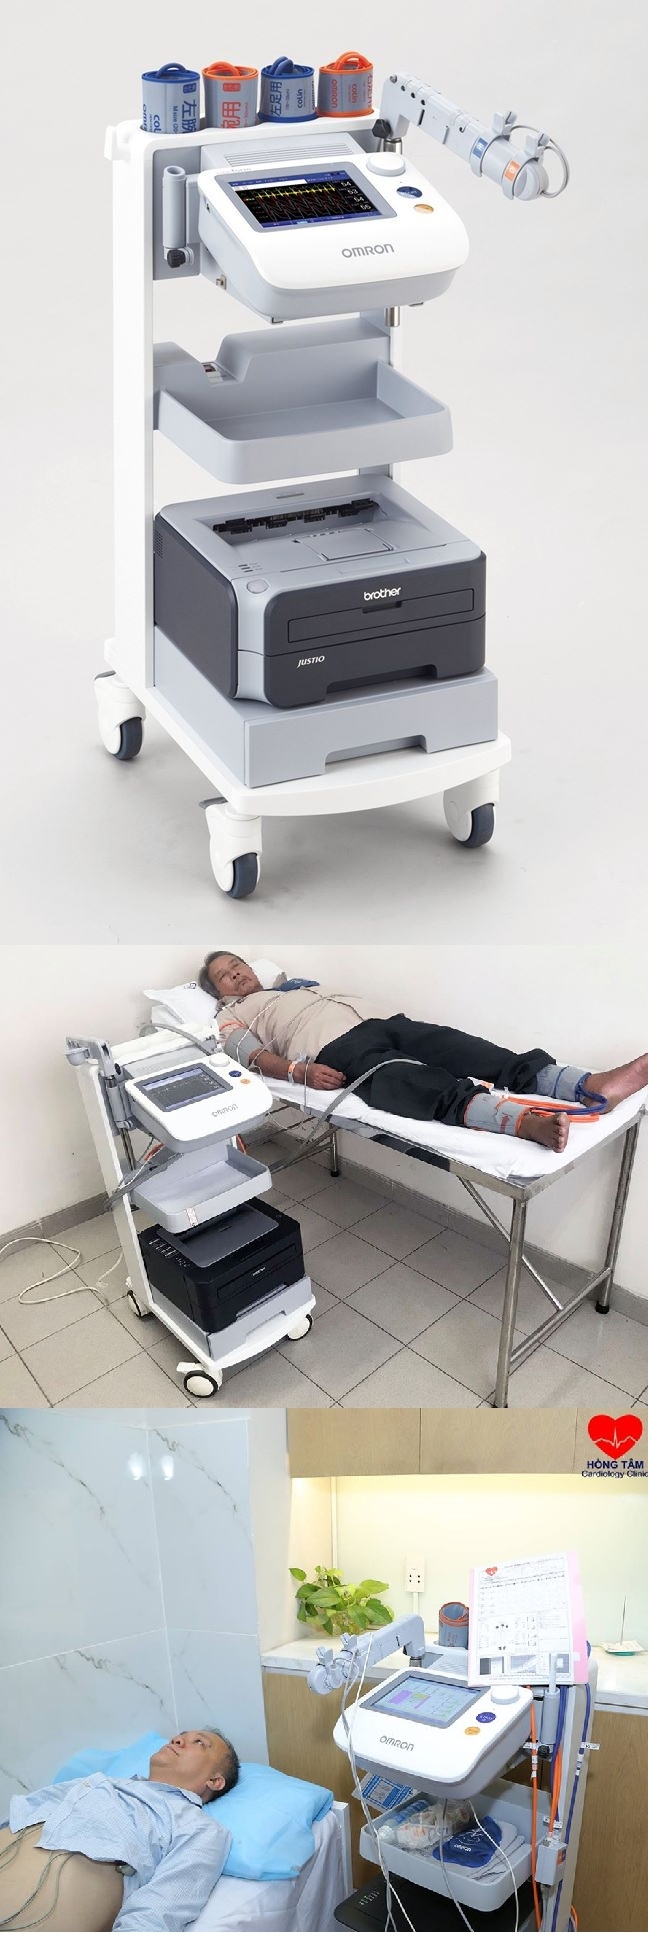 Máy scan mạch không xâm nhập Omron VP-1000 Plus